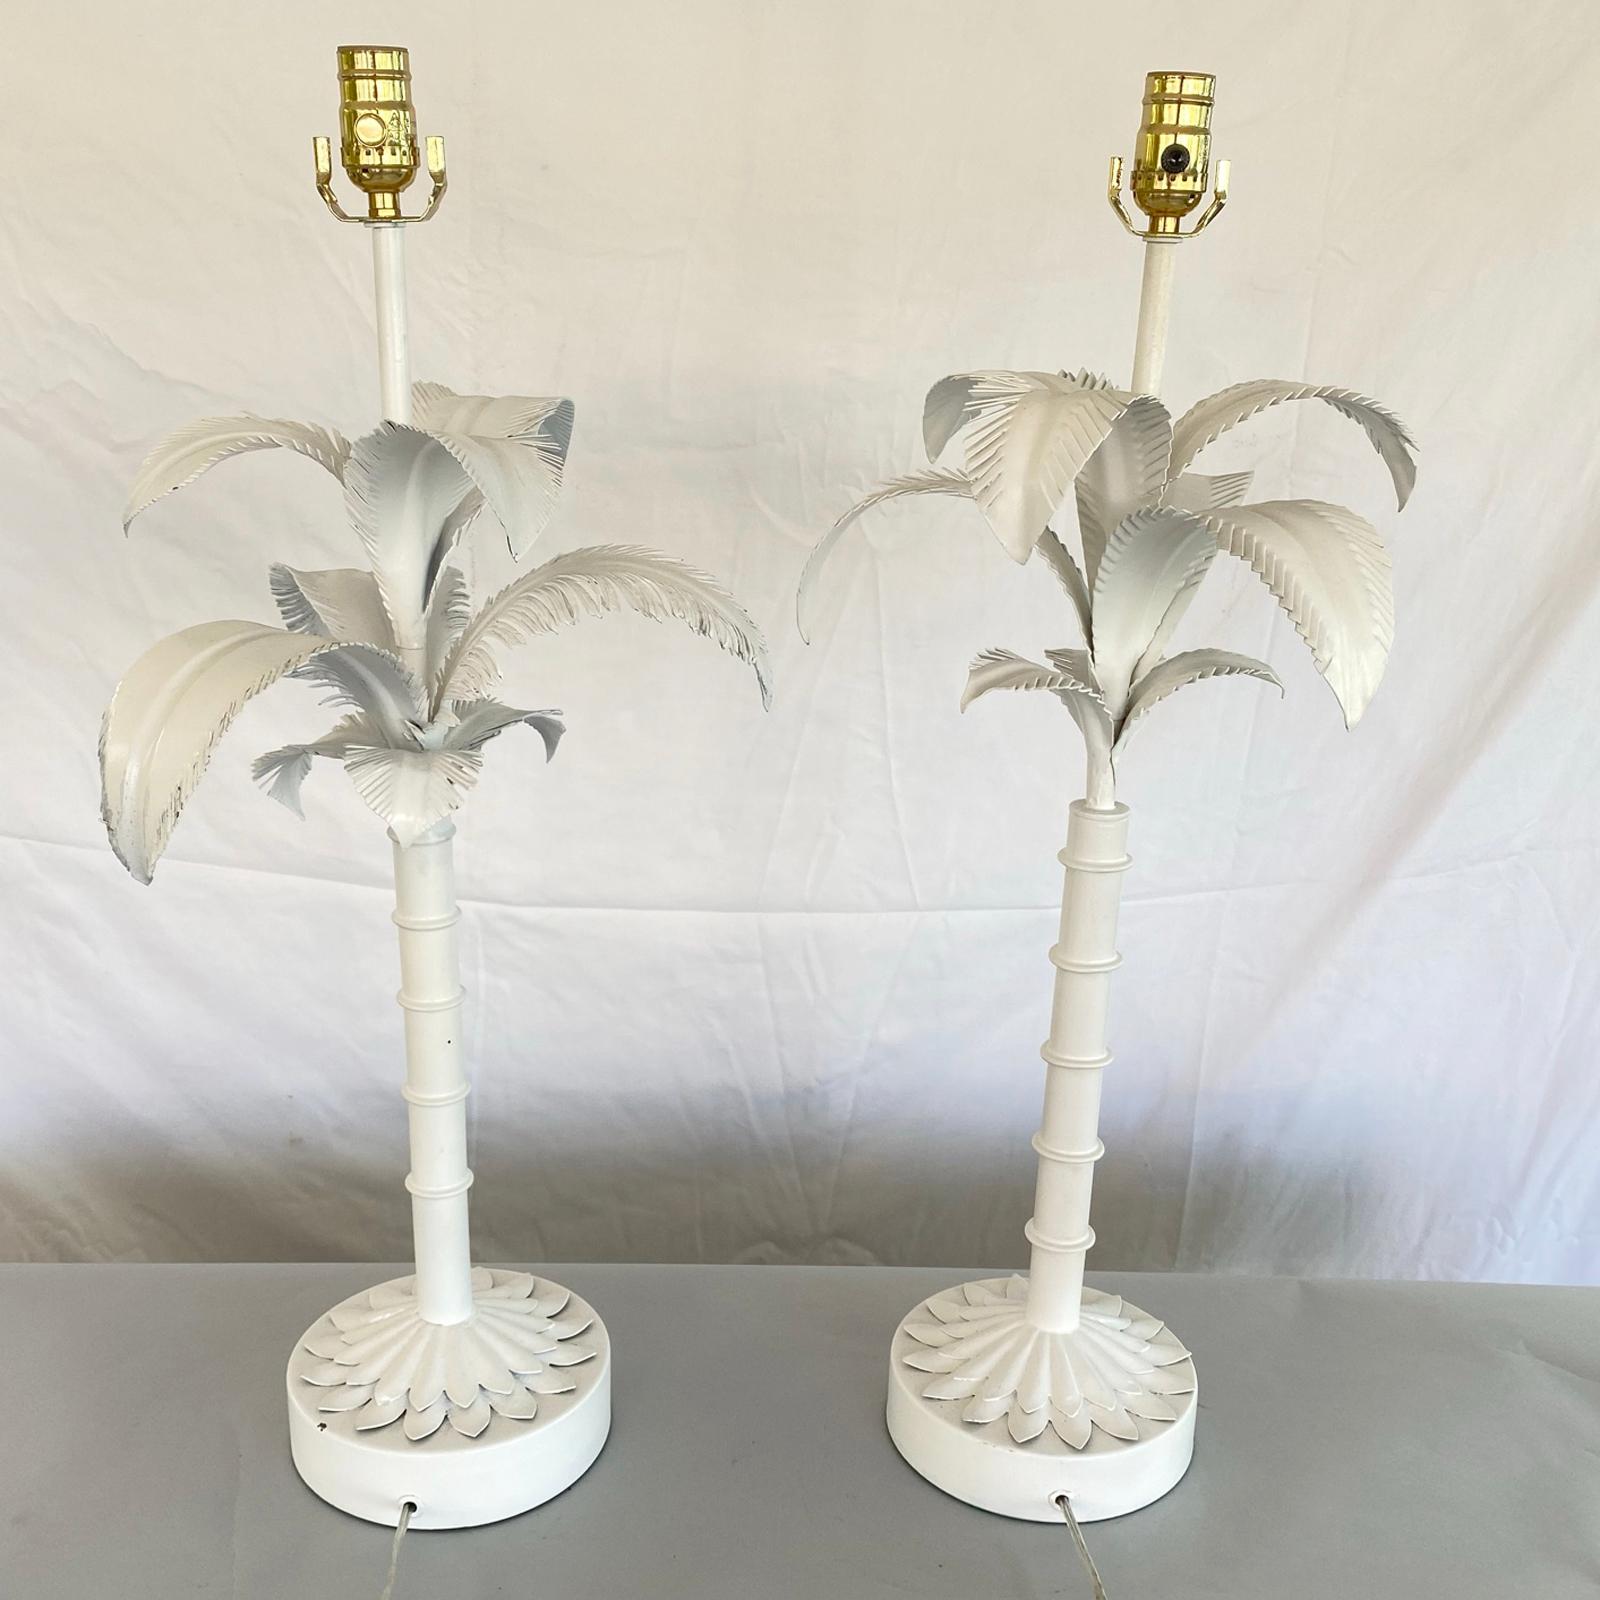 Zwei klassische, bemalte Palmenlampen im Vintage-Stil, jede mit einem segmentierten Baumstamm, der von Wedeln gekrönt wird, auf einem runden Sockel mit einem abgestuften Blattdekor am Fuß. 

Lager-ID: D2988.